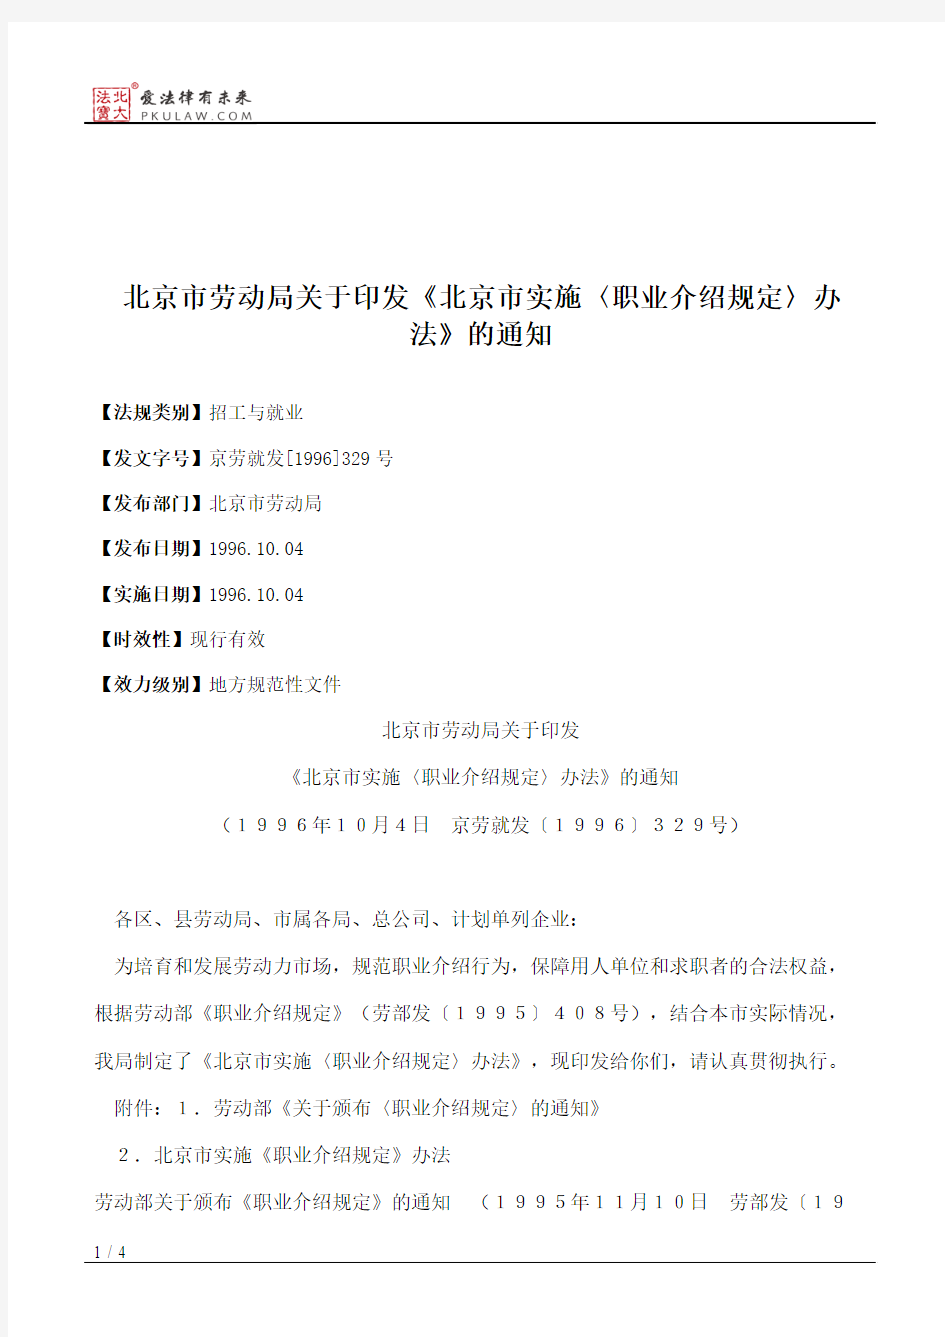 北京市劳动局关于印发《北京市实施〈职业介绍规定〉办法》的通知